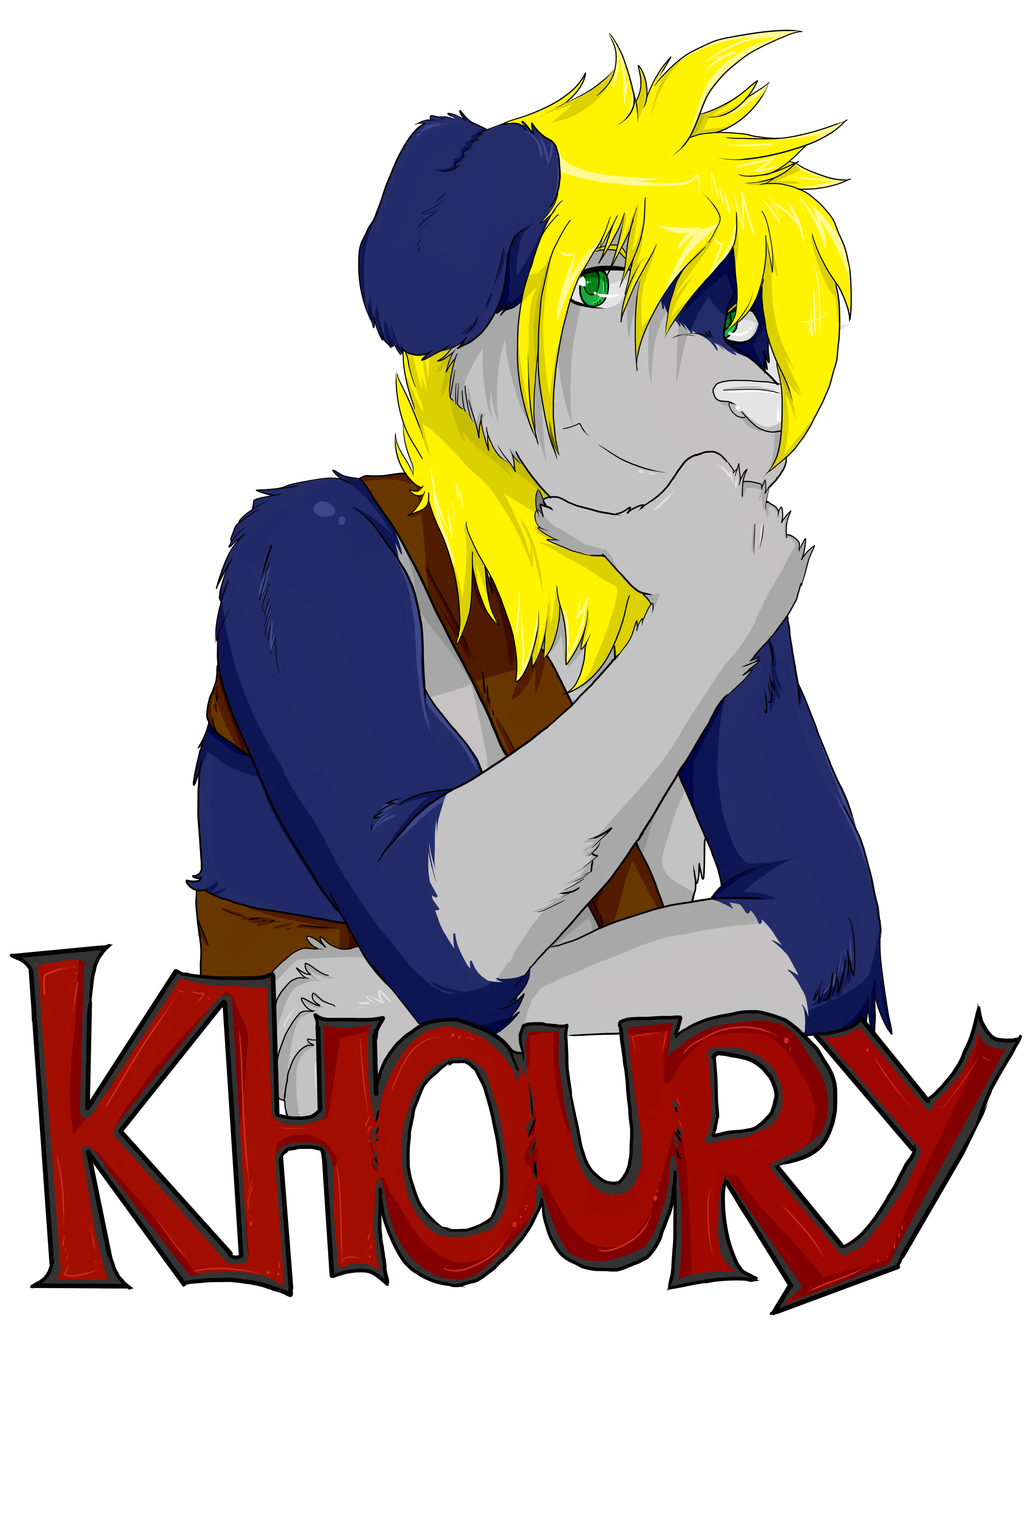 Khoury Badge (Commission)